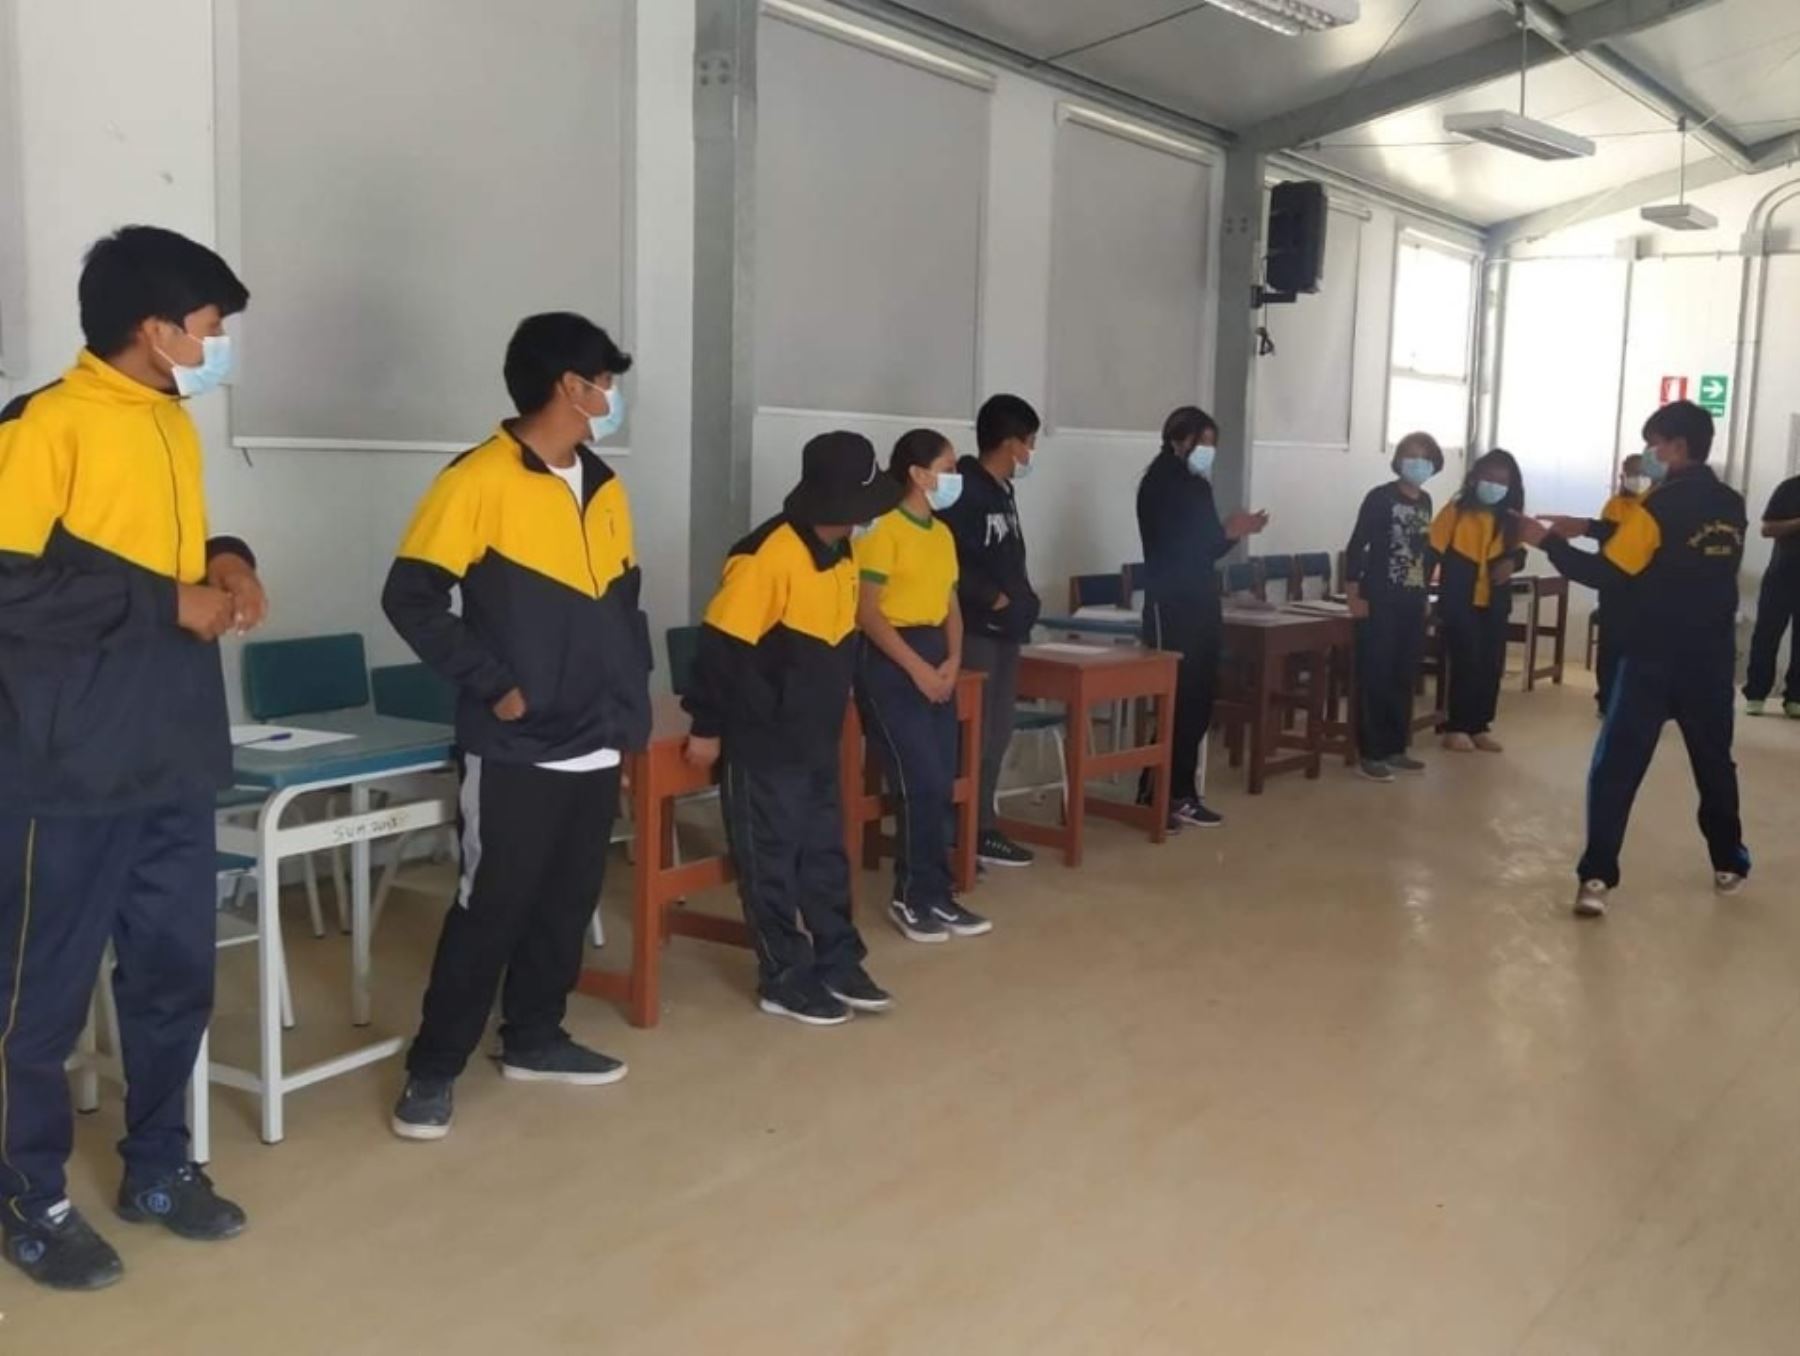 Ante el incremento de casos de violencia en colegios de Tacna, la Dirección Regional de Educación organiza talleres para prevenir estos hechos. ANDINA/Difusión